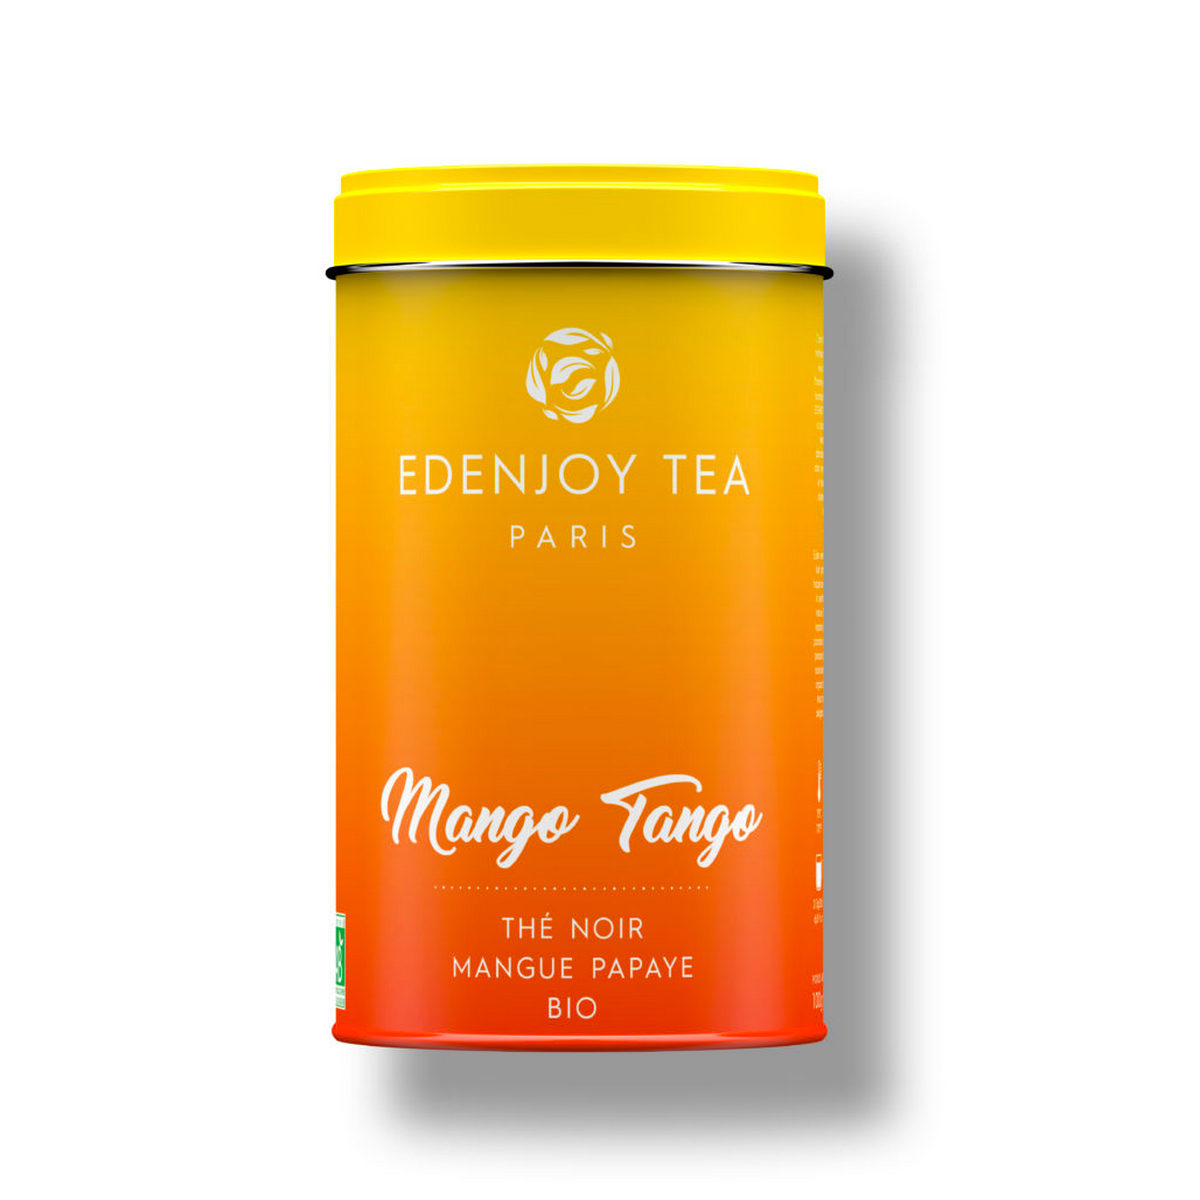 edenjoy the noir bio mangue papaye mango tango une idee cadeau